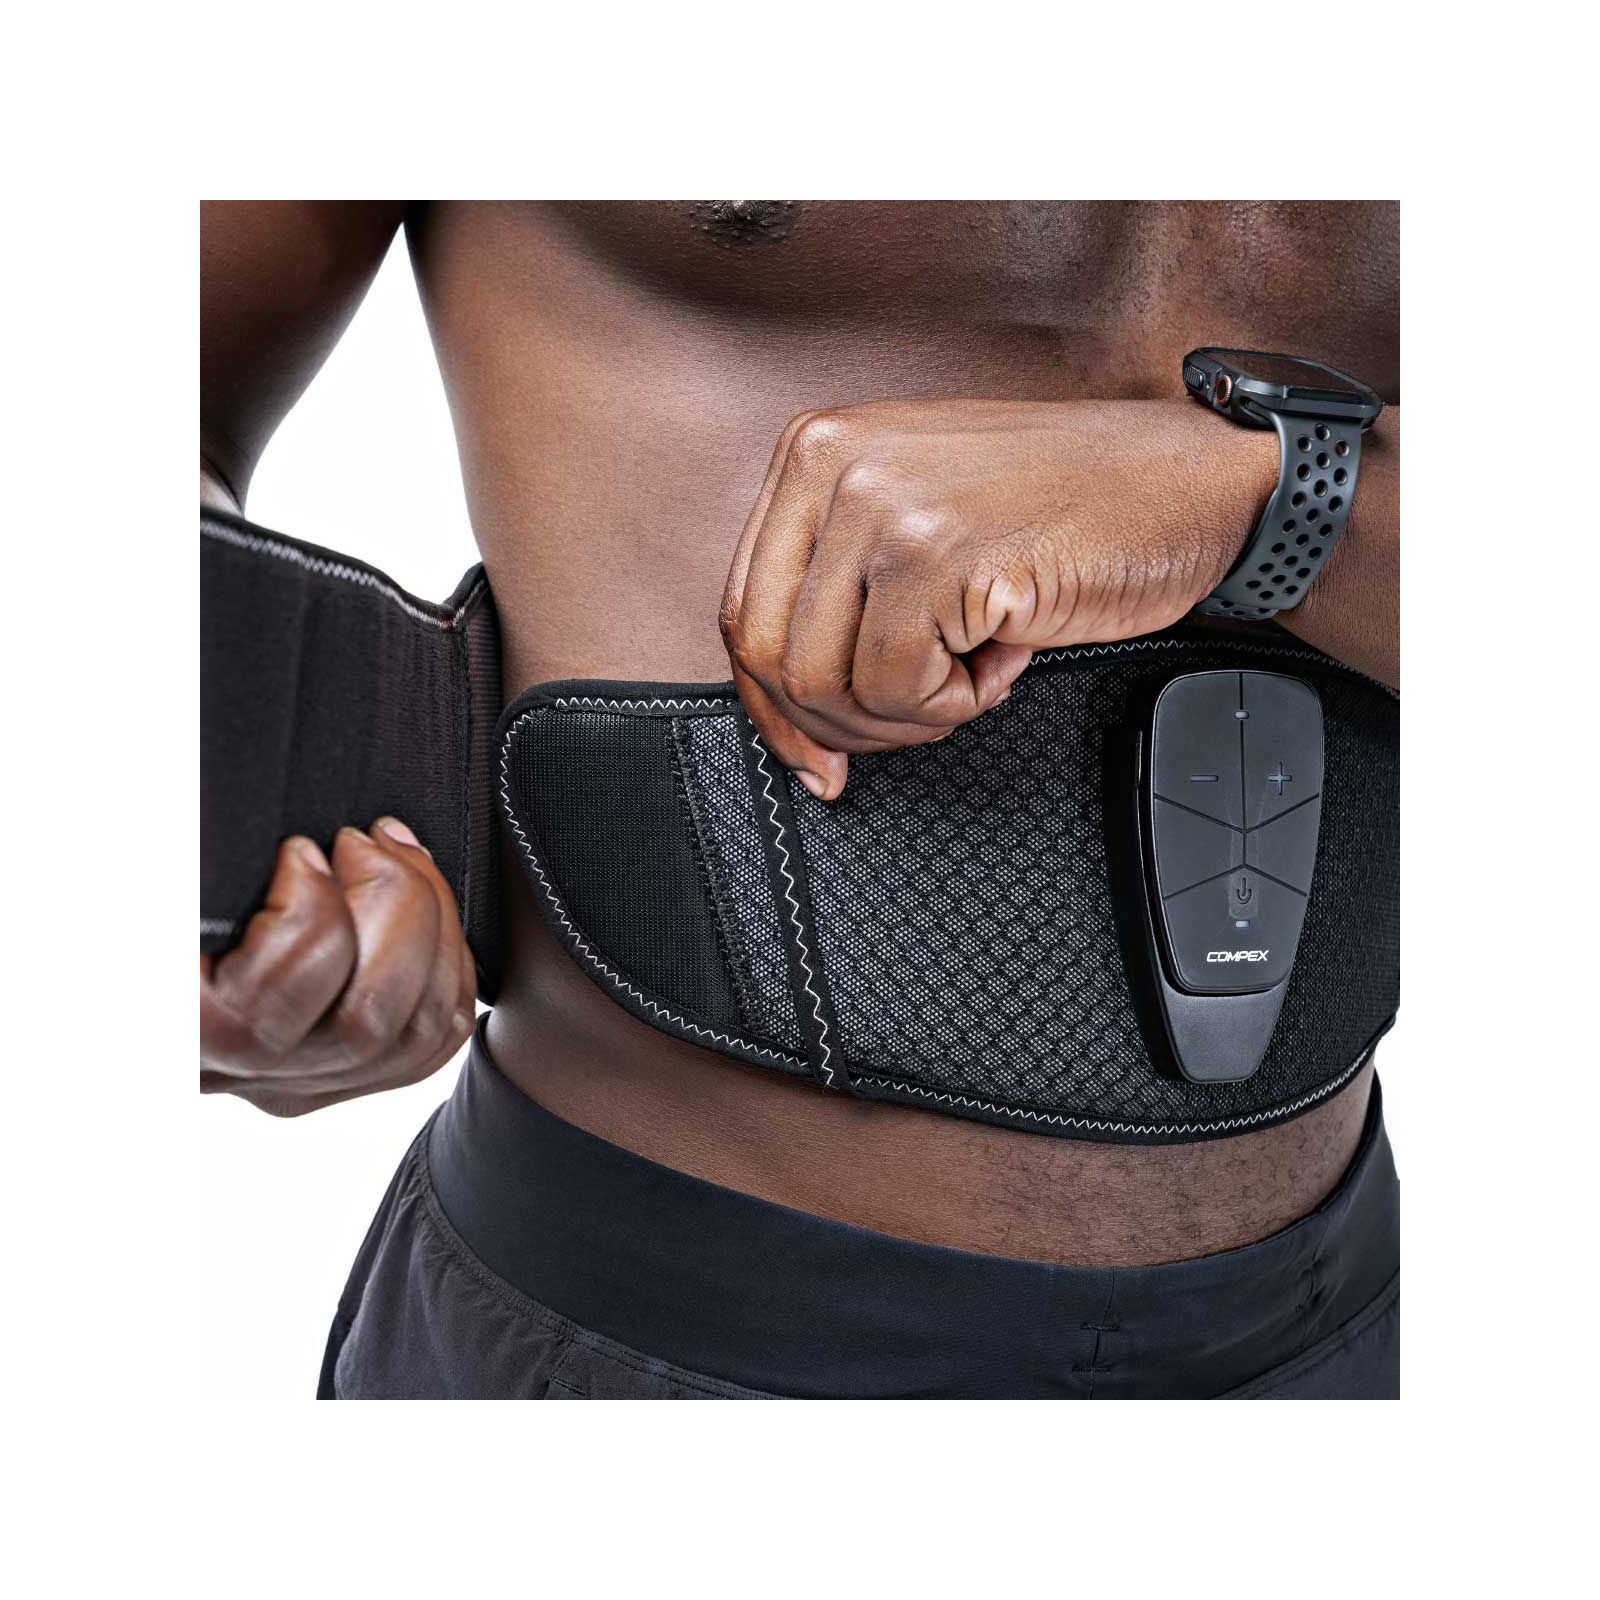 Compex cinturón Corebelt 5.0  Electrónica Electroestimulador muscular  Compex